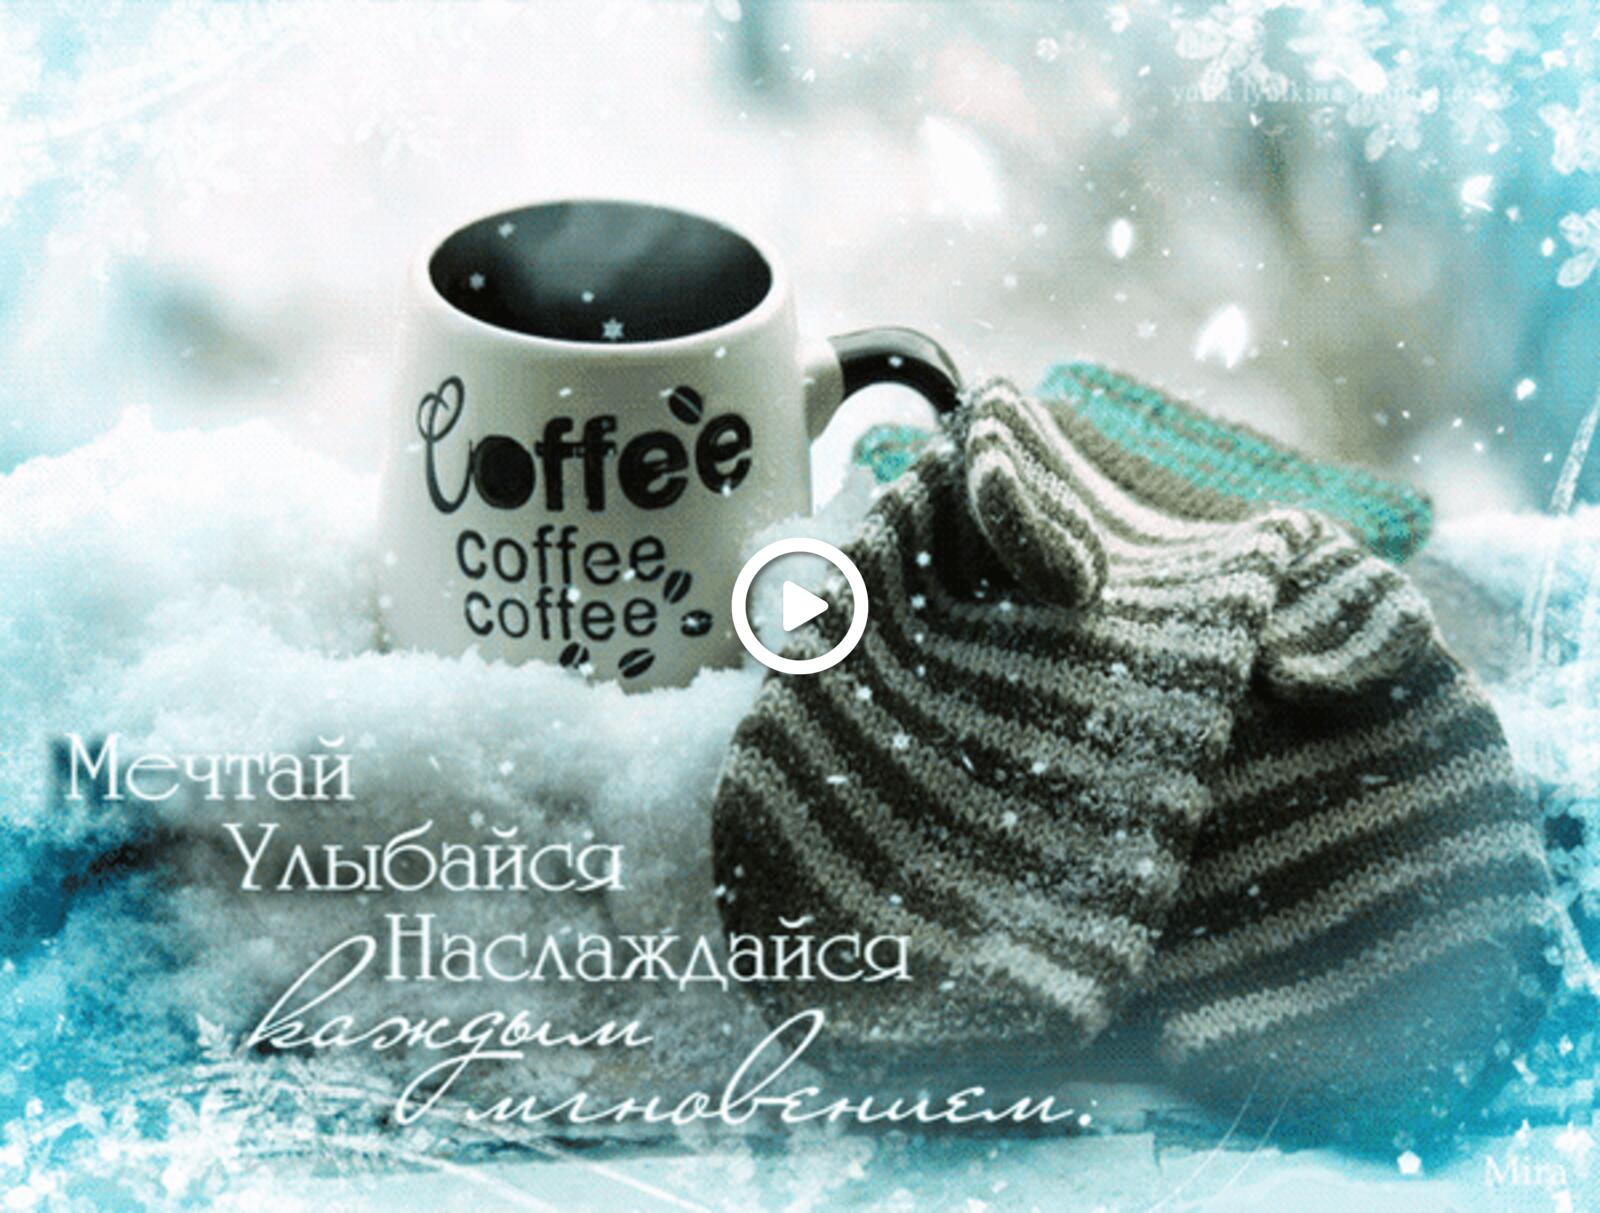 一张以动画 gifs 咖啡为主题的明信片